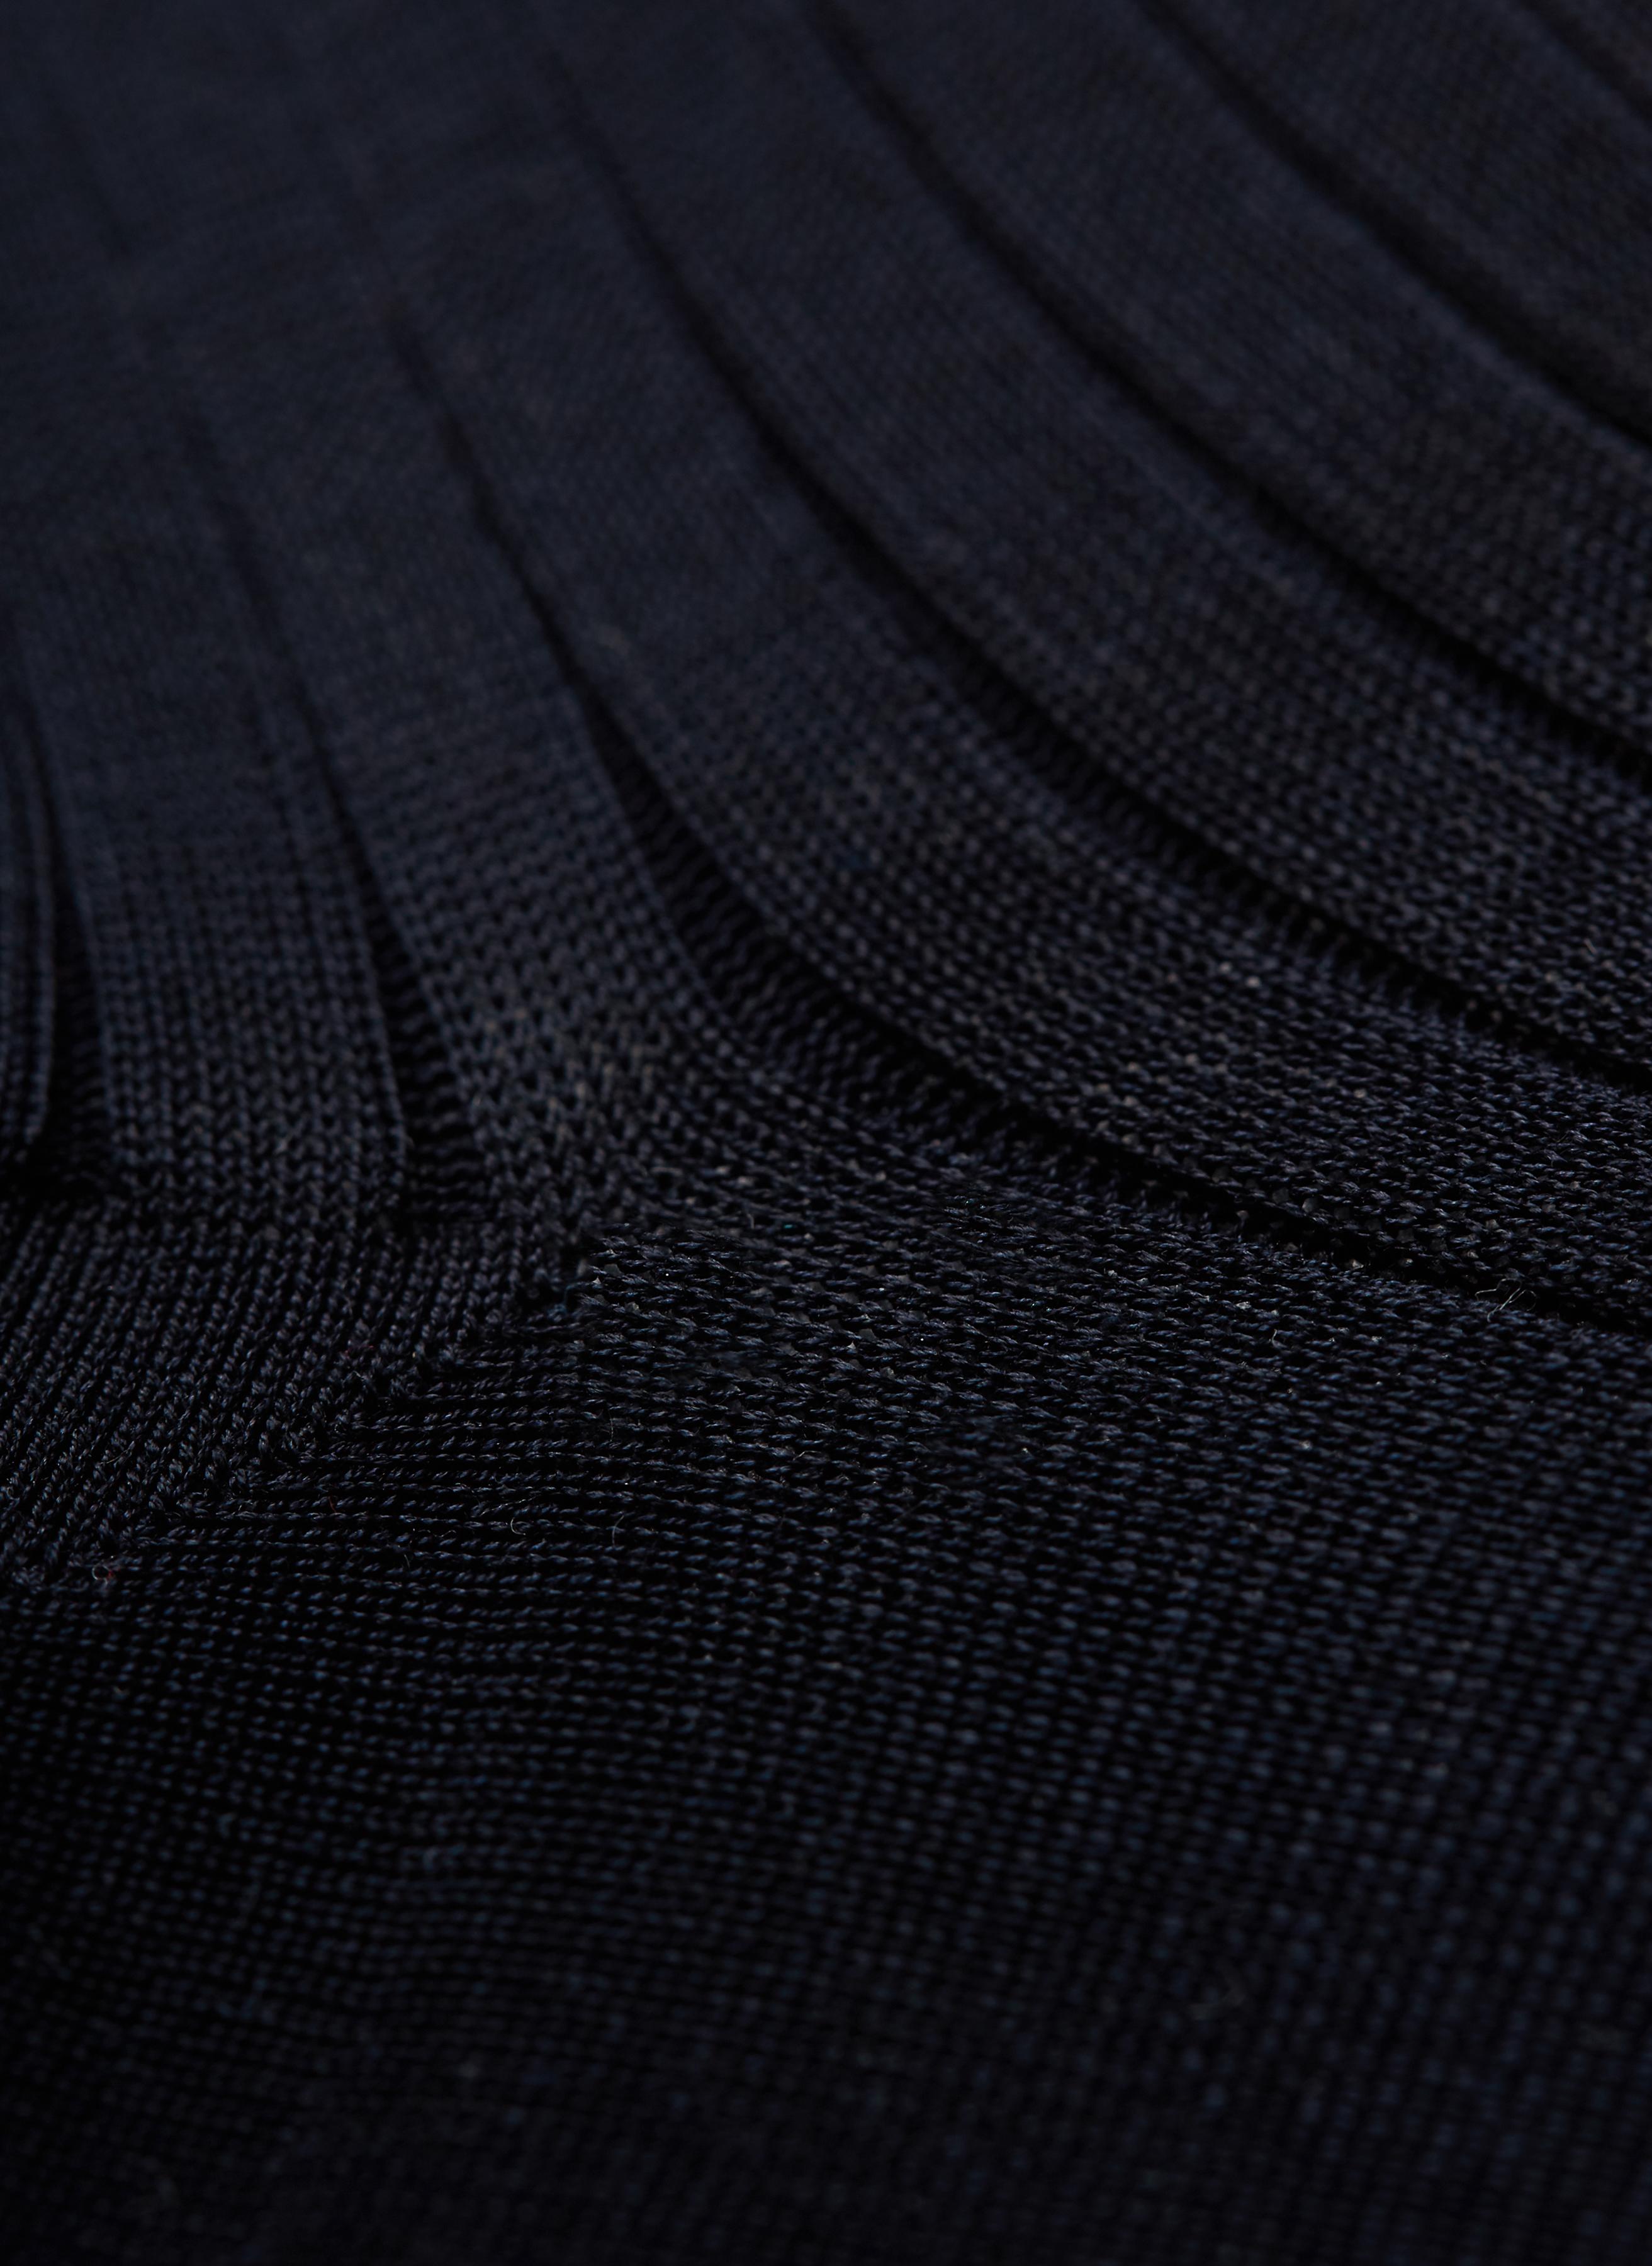 Bresciani cotton socks in black colour. Large view